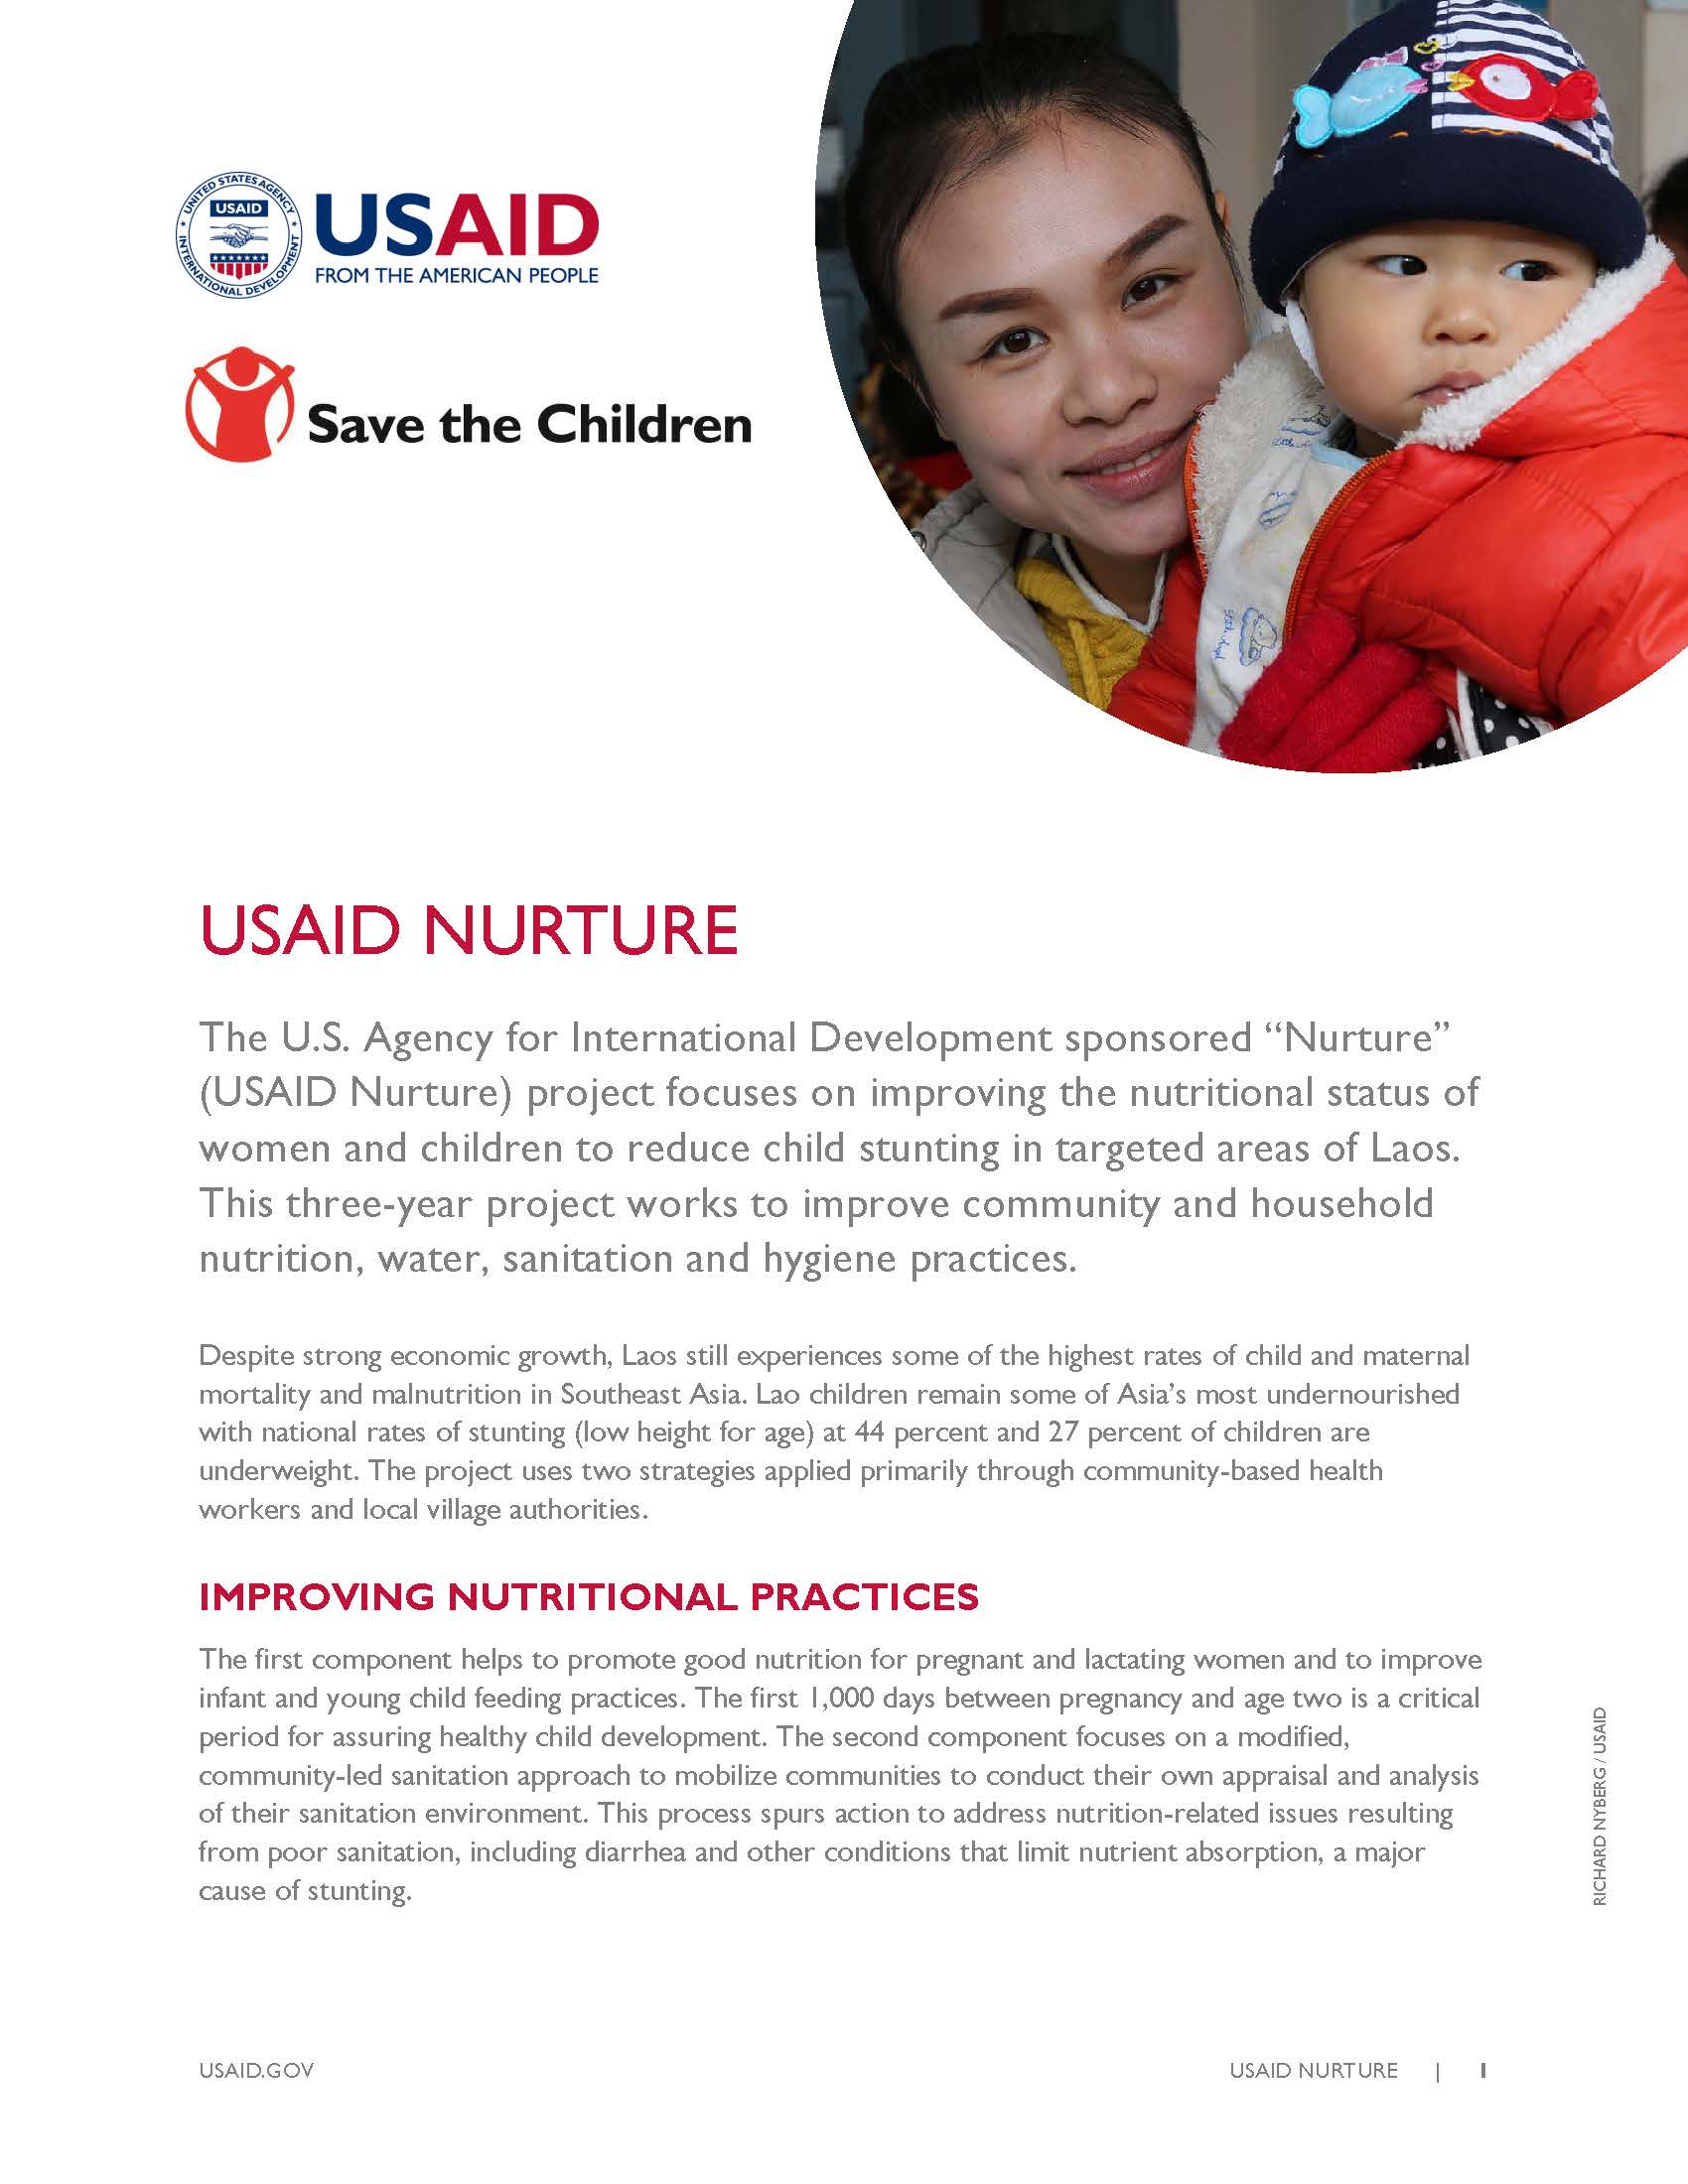 USAID Nurture